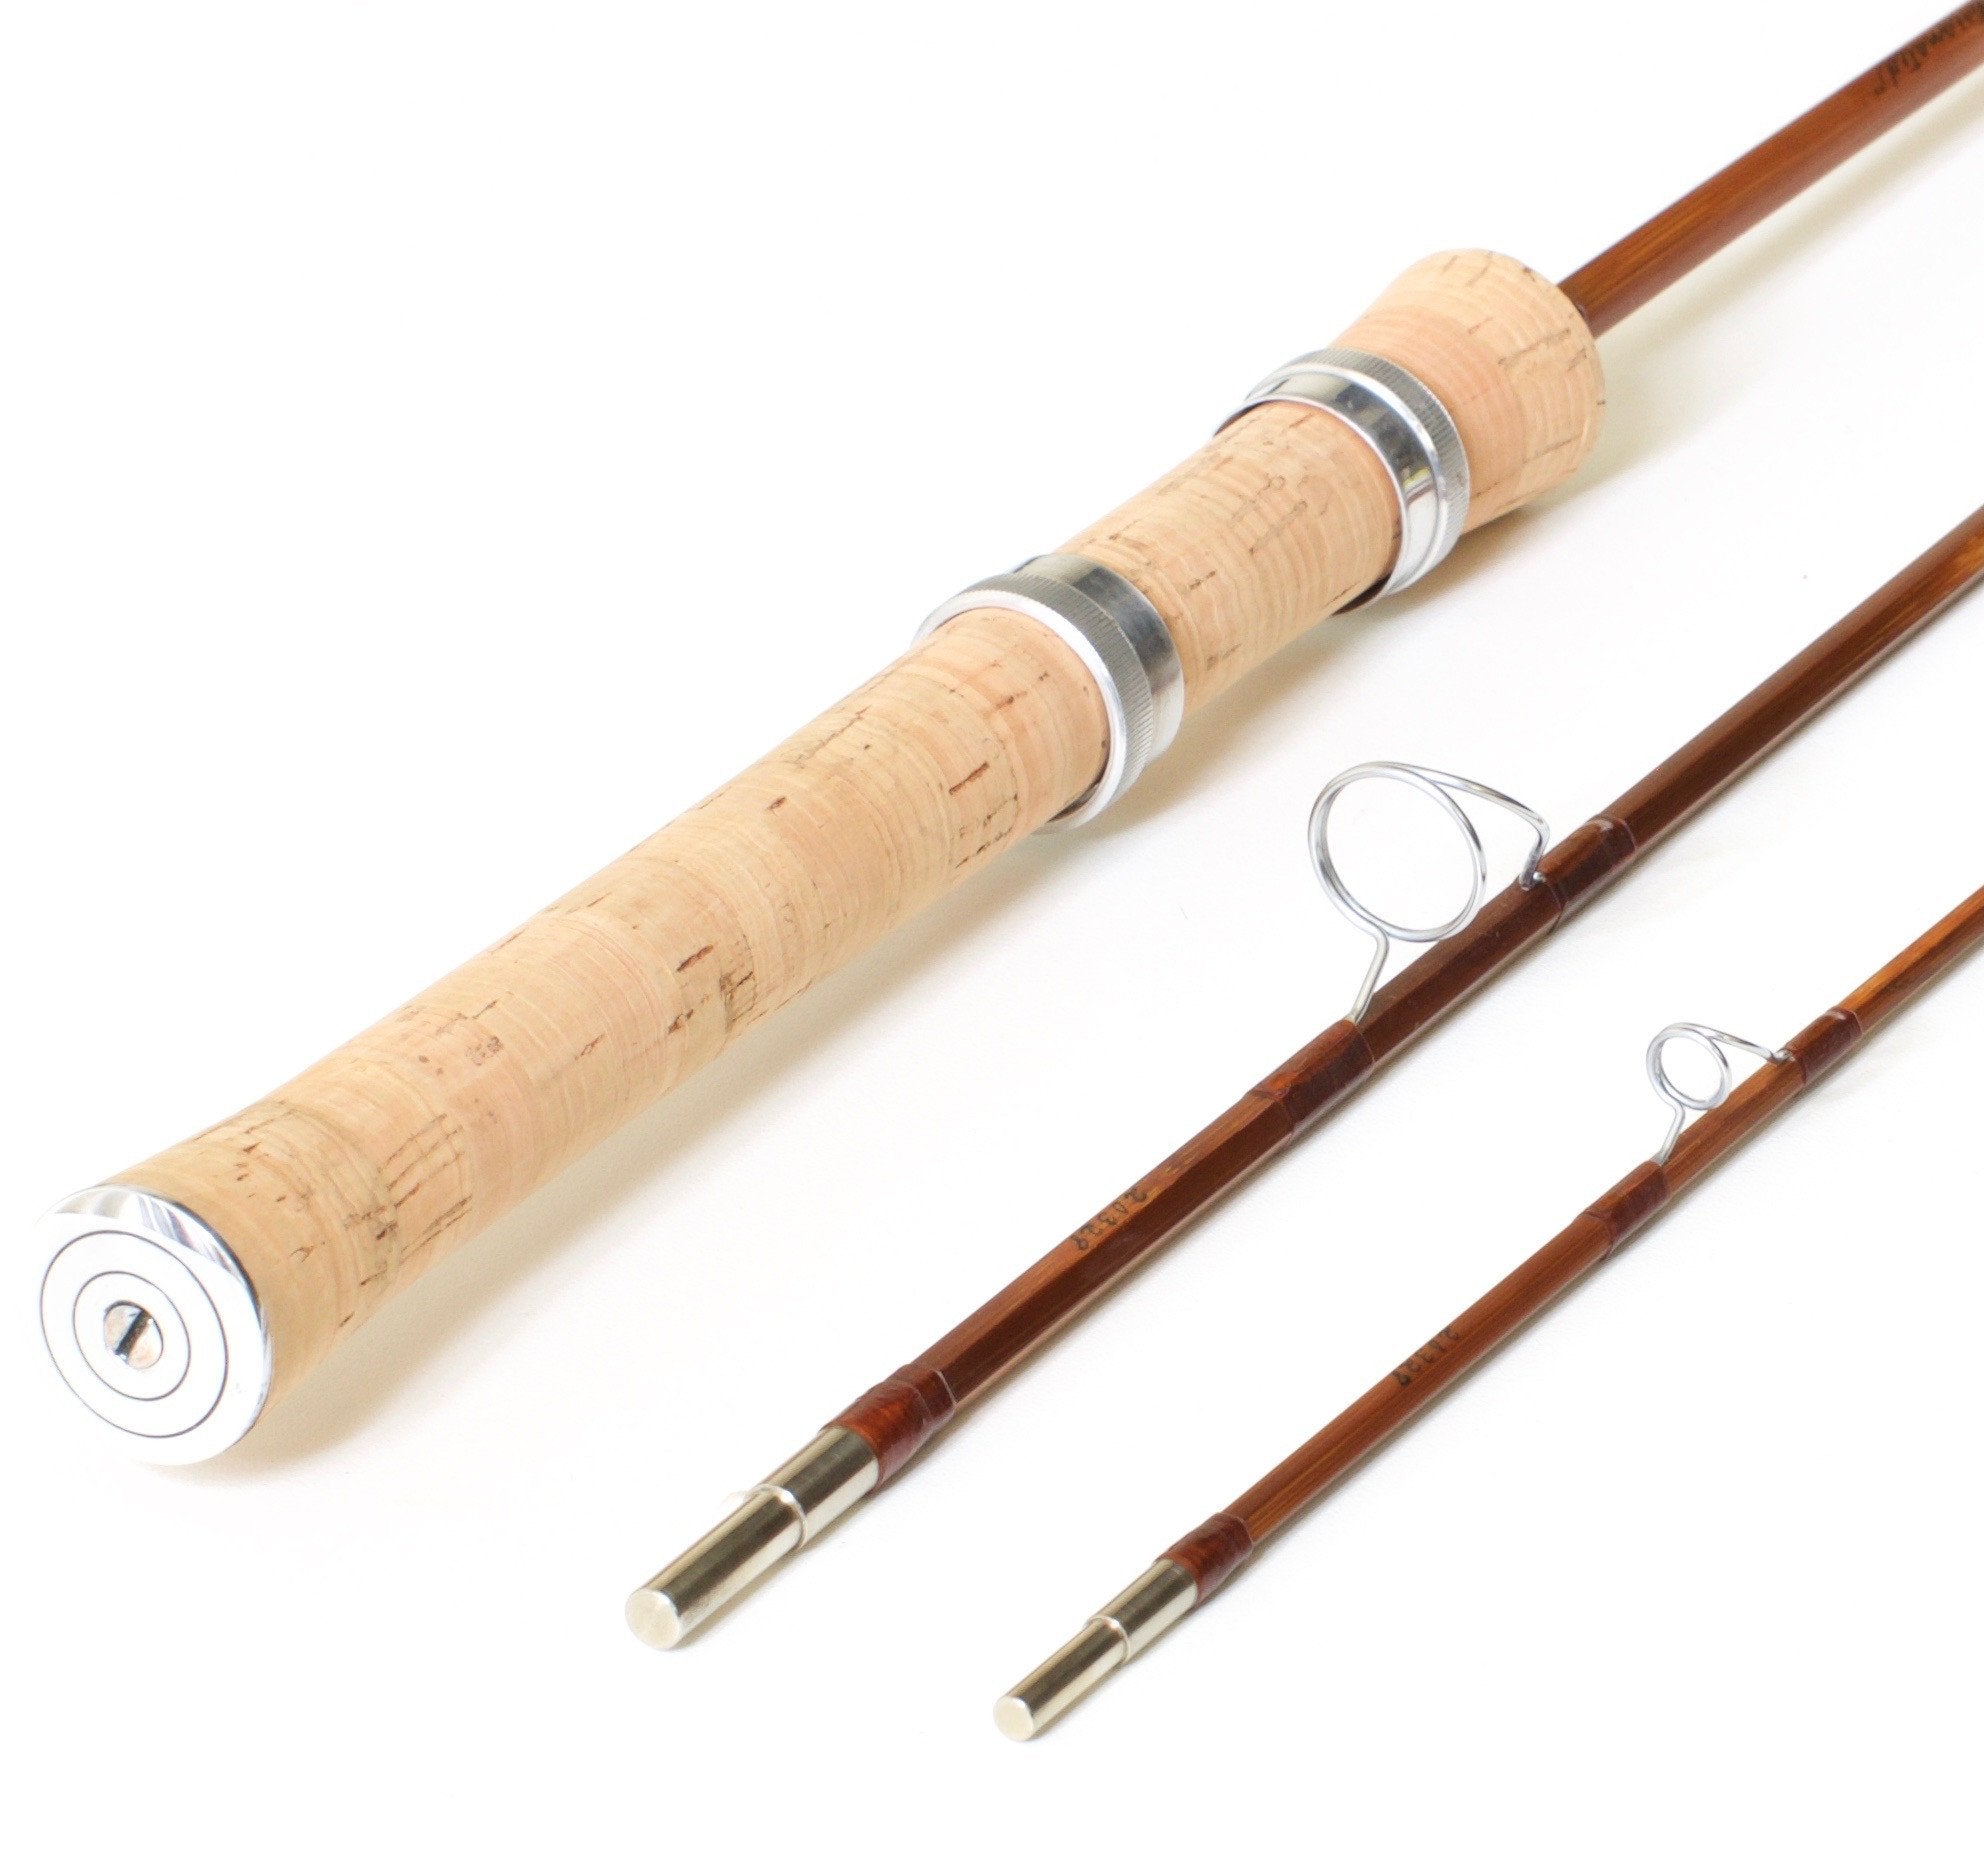 Orvis Rocky Mountain 6'6 Spinning Bamboo Rod - Spinoza Rod Company